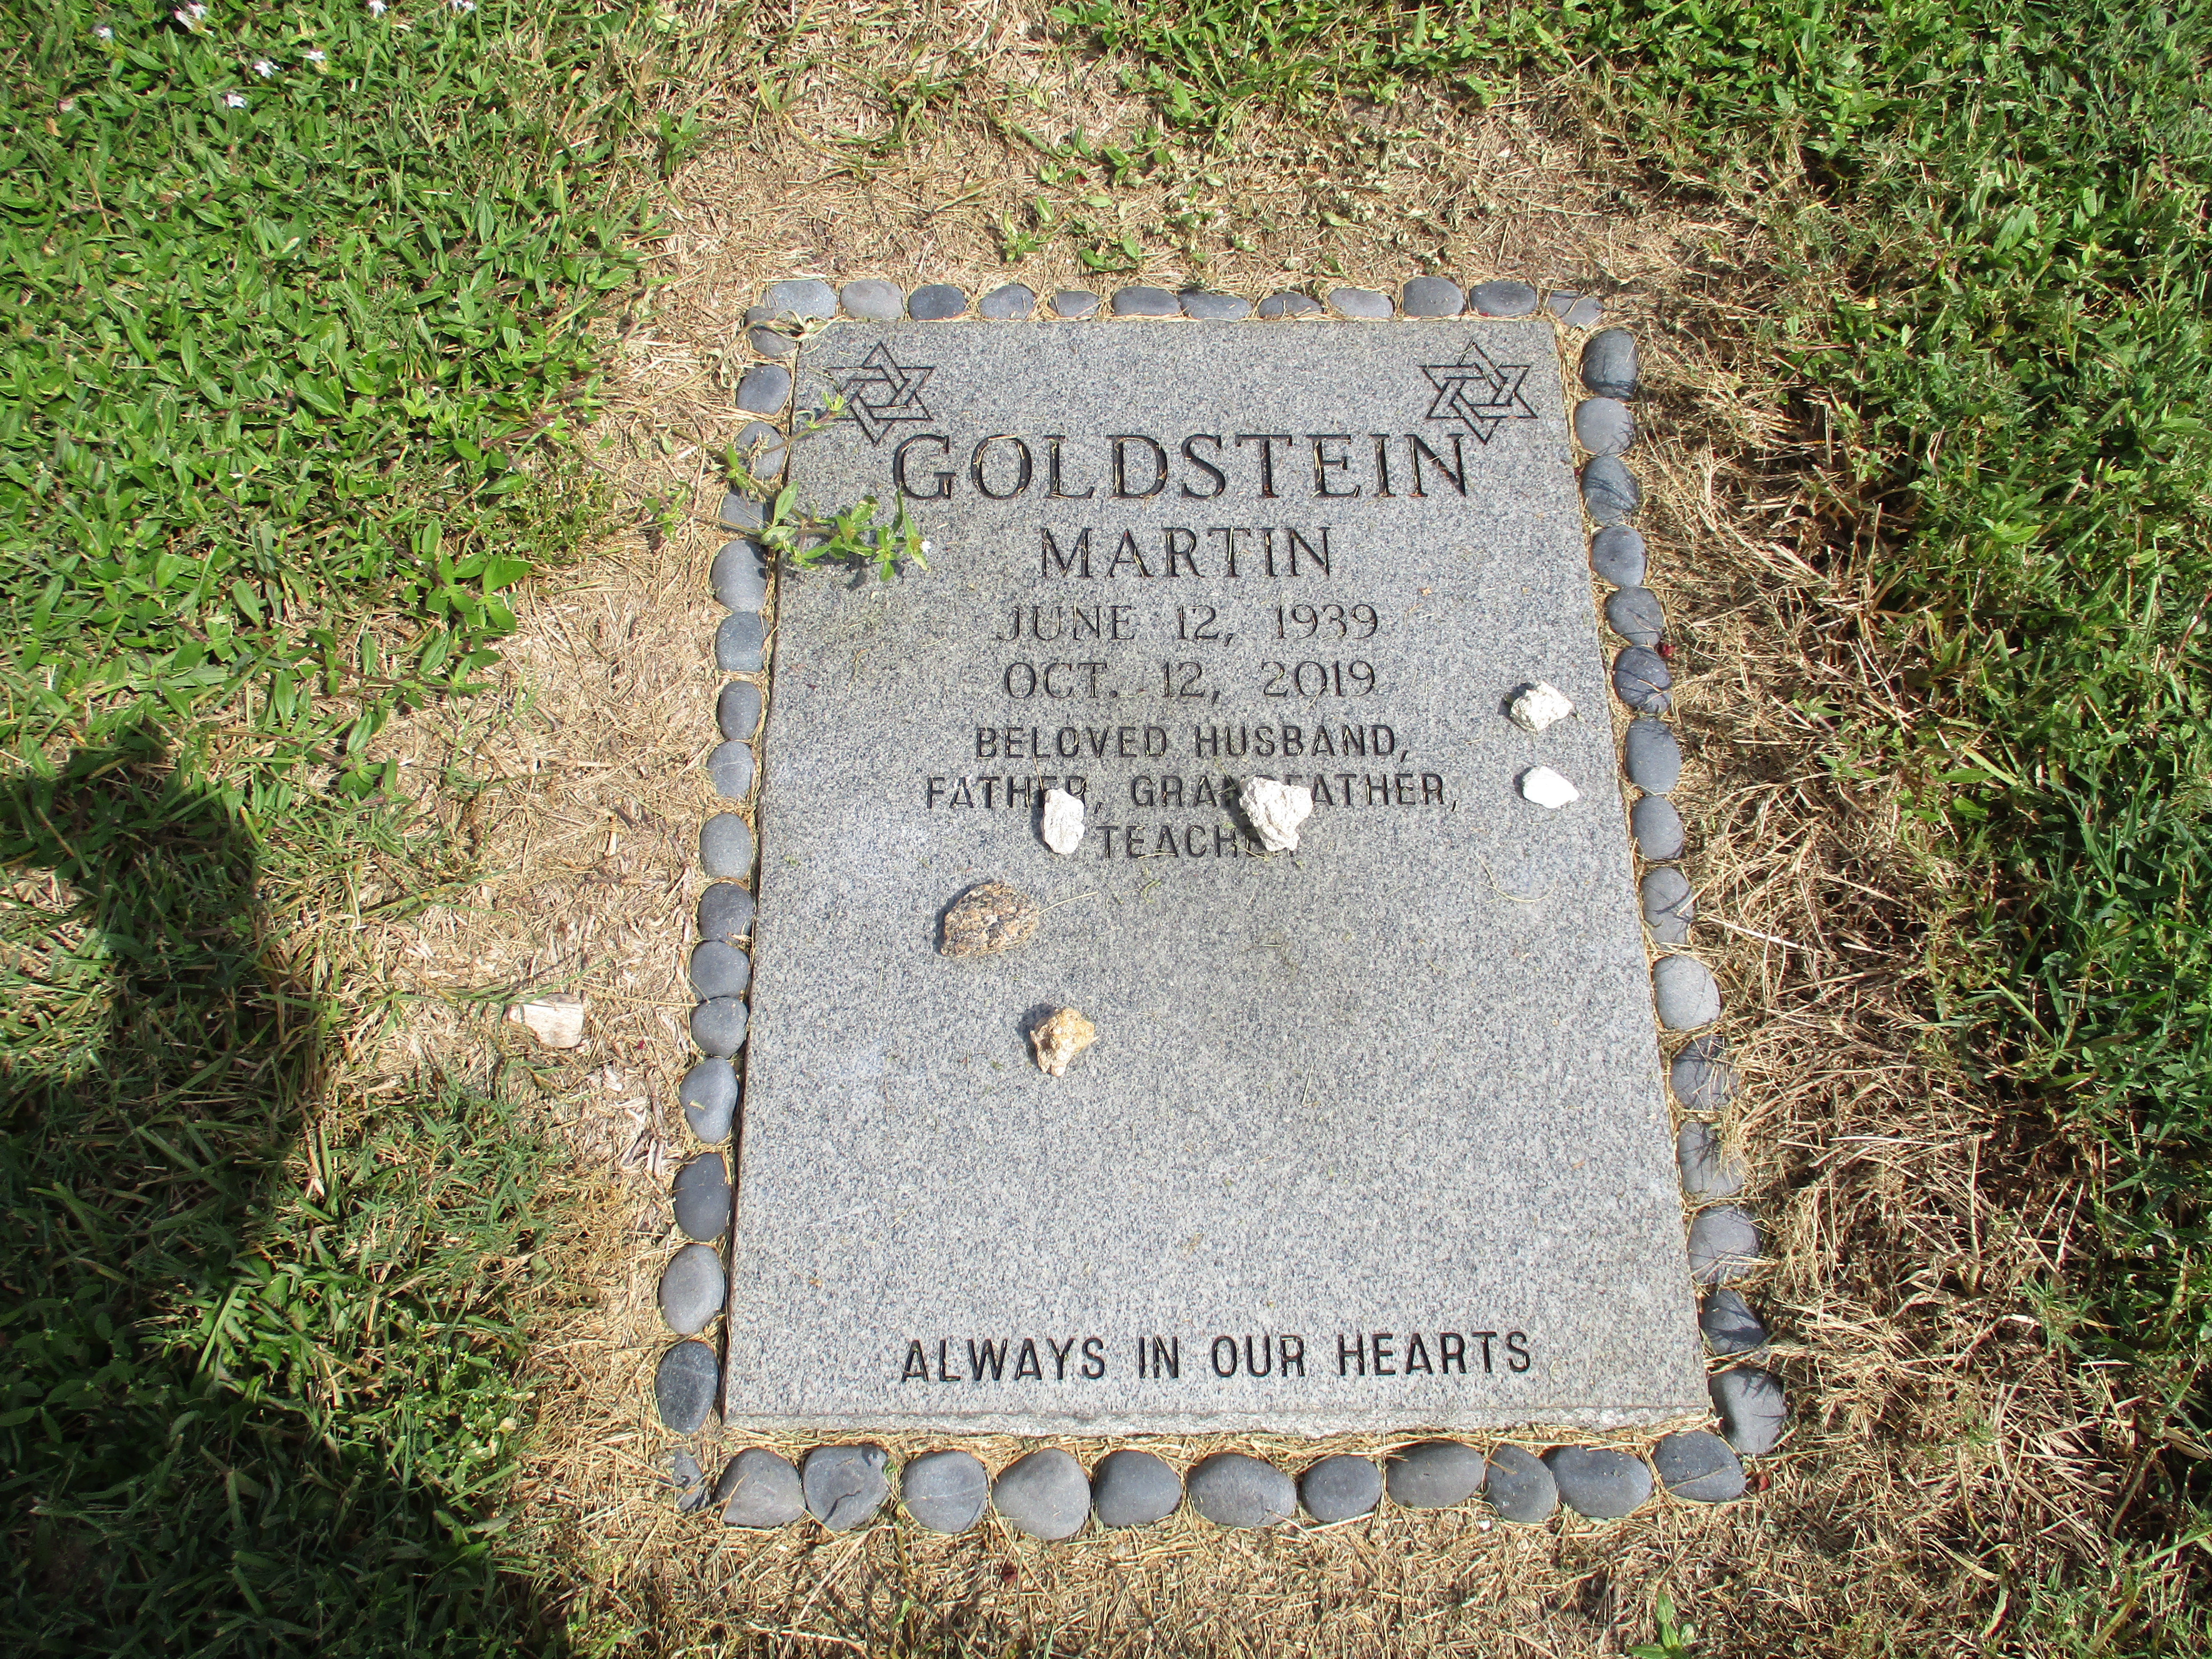 Martin Goldstein